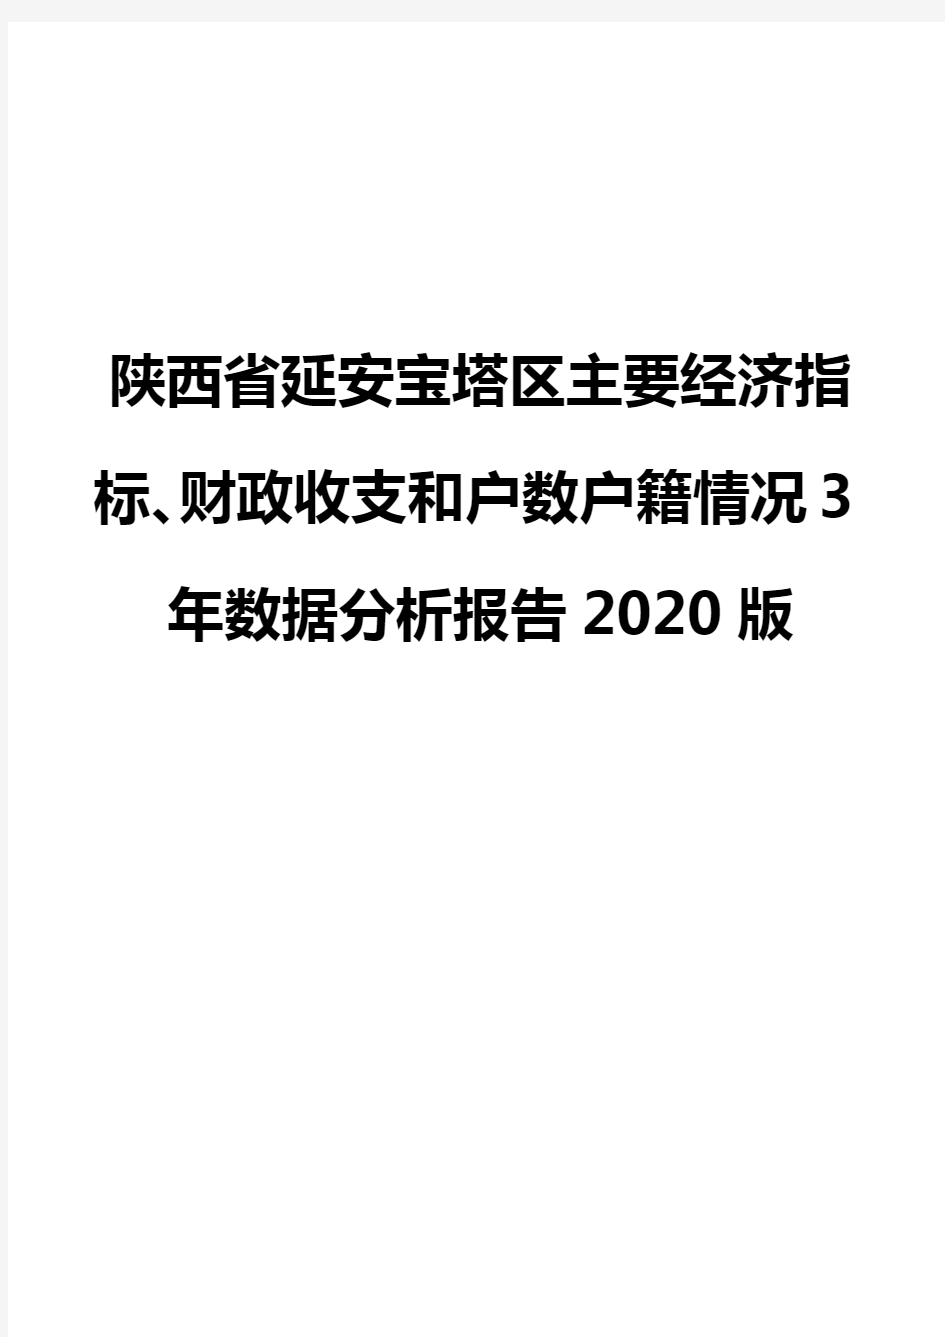 陕西省延安宝塔区主要经济指标、财政收支和户数户籍情况3年数据分析报告2020版